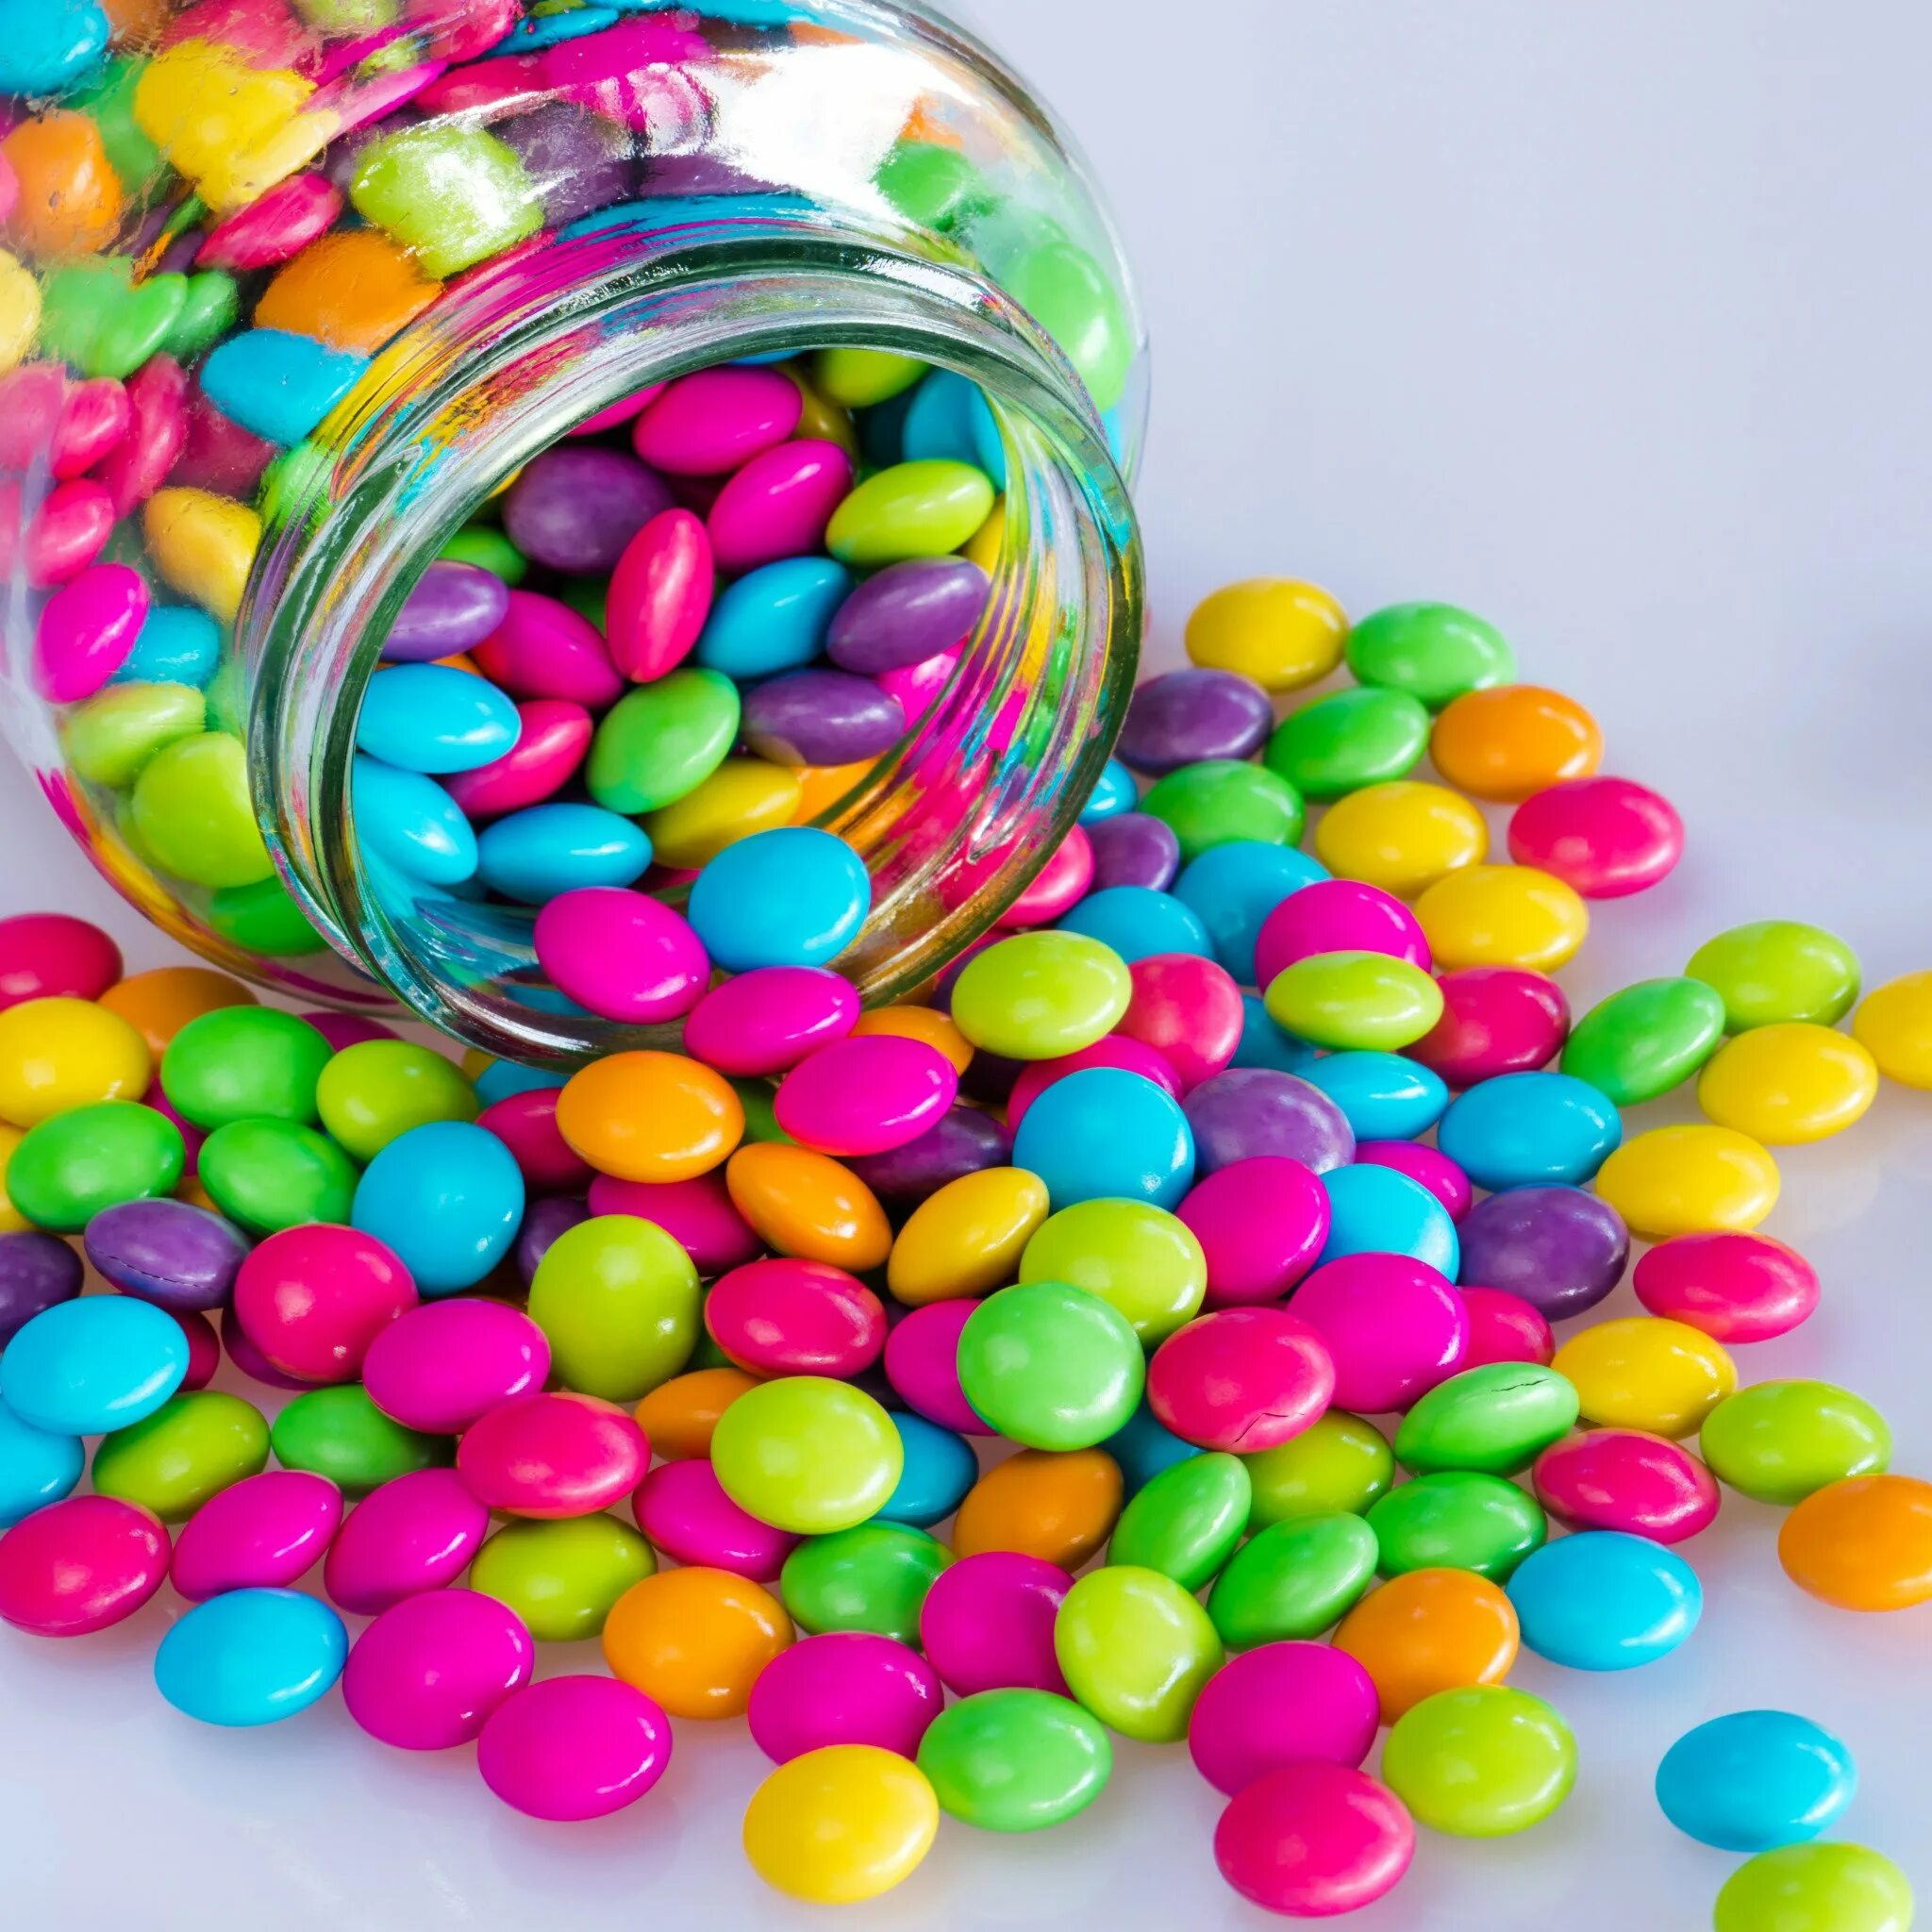 Jelly m. Конфеты разноцветные. Разноцветные драже. Драже конфеты. Круглые конфеты.